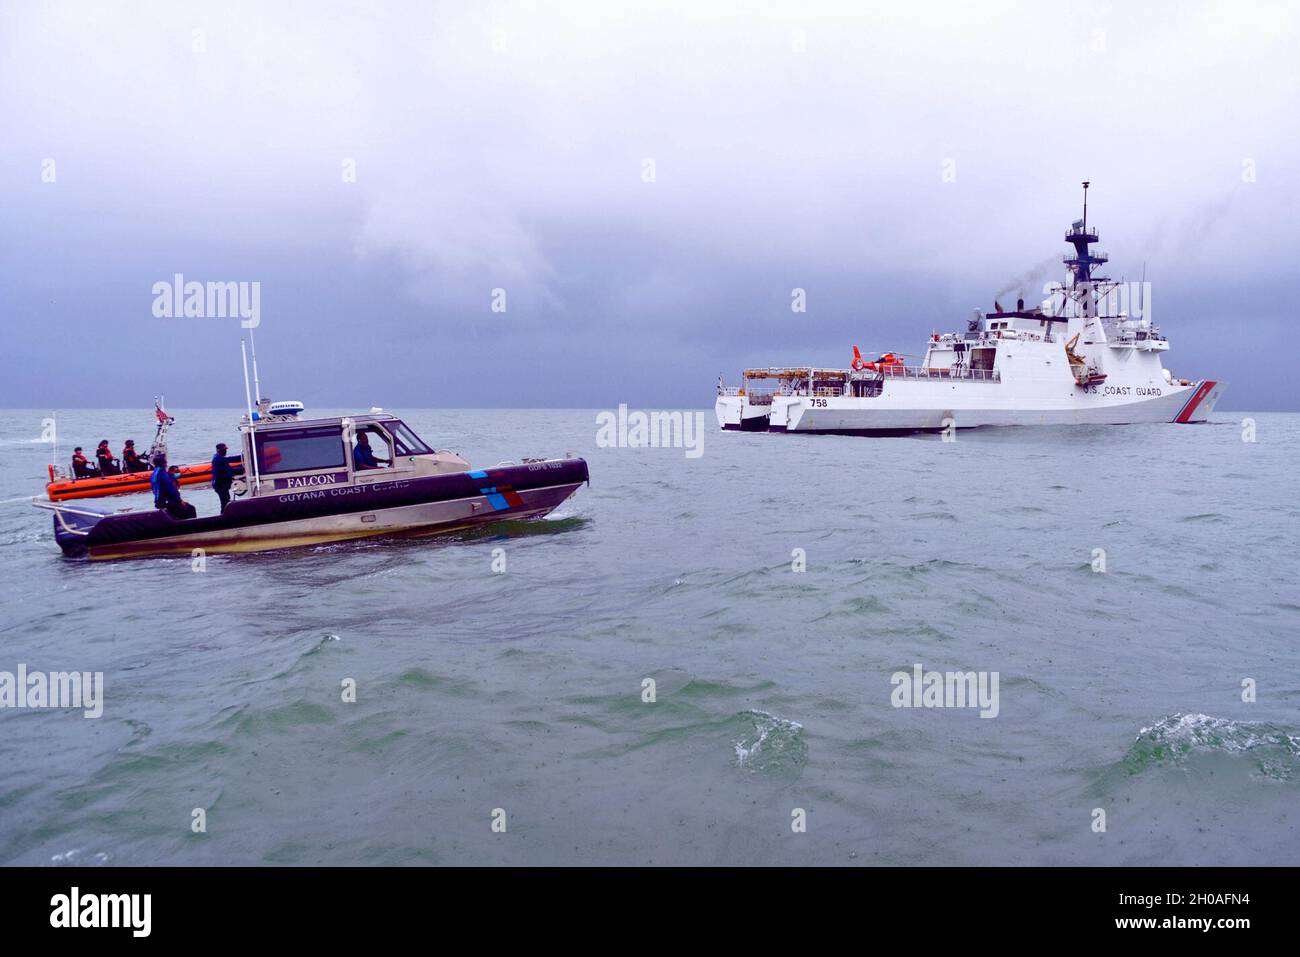 Am 9. Januar 2021 patrouillieren kleine Boote der US-Küstenwache und der Guyana-Küstenwache hinter dem USCGC Stone (WMSL 758) vor der Küste Guyanas. Die beiden Länder haben am 18. September 2020 ein bilaterales Abkommen zur Zusammenarbeit bei der Unterdrückung illegaler maritimer Aktivitäten in den Gewässern Guyanas geschlossen. Stockfoto